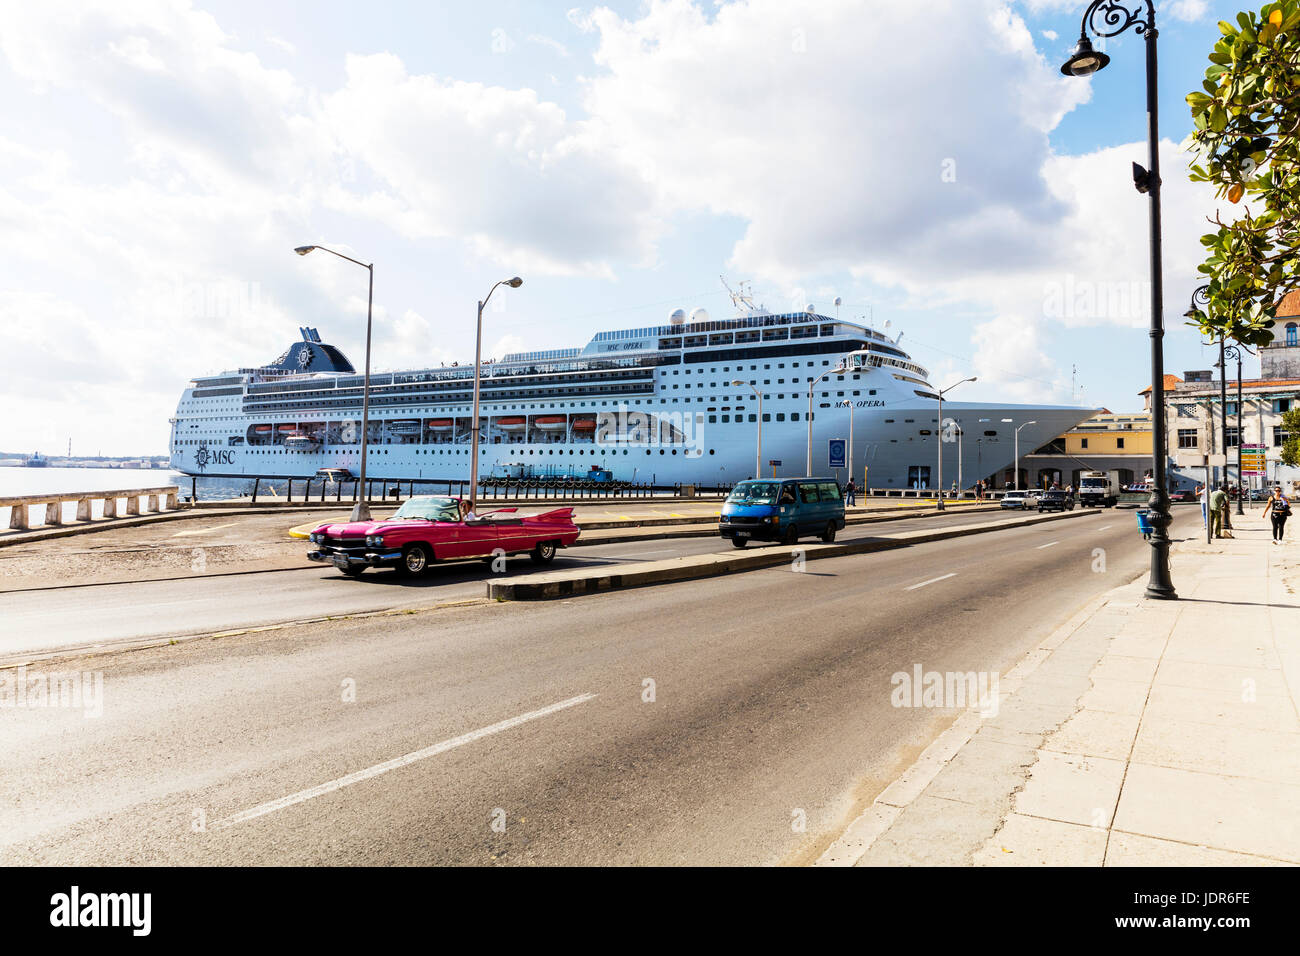 Kreuzfahrtschiff im Hafen von Havanna Kuba, Havanna Hafen, Kreuzfahrtschiff, Havanna Kuba Anlaufhafen Cruise Terminal, Kreuzfahrtschiffe vor Anker im Hafen, Havanna Stockfoto